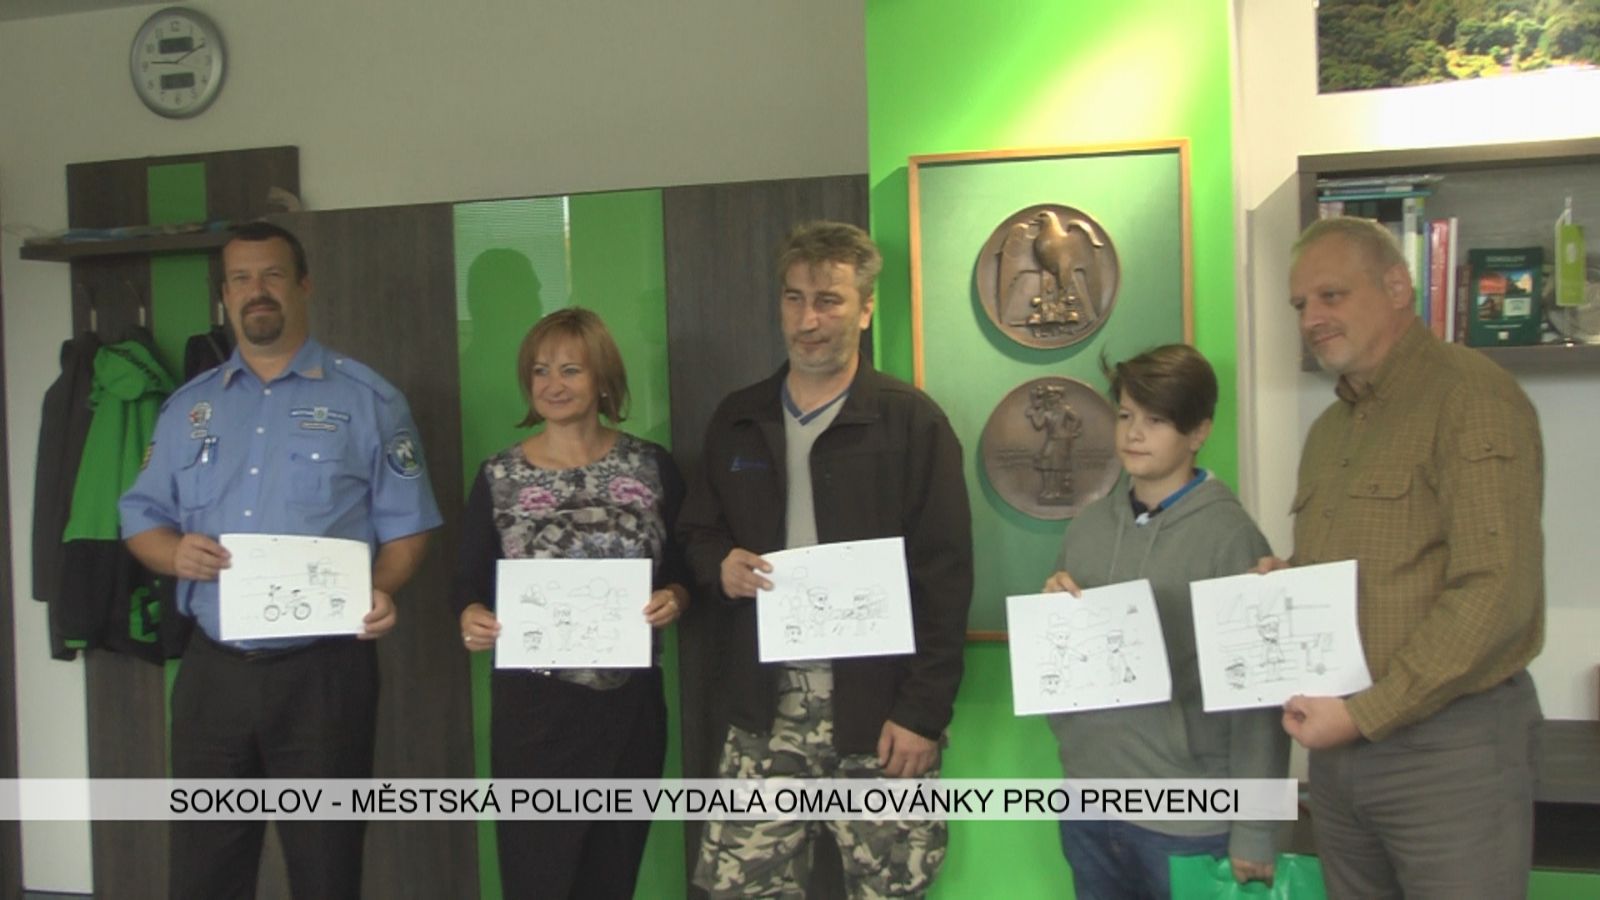 Sokolov: Městská policie vydala omalovánky pro prevenci (TV Západ)